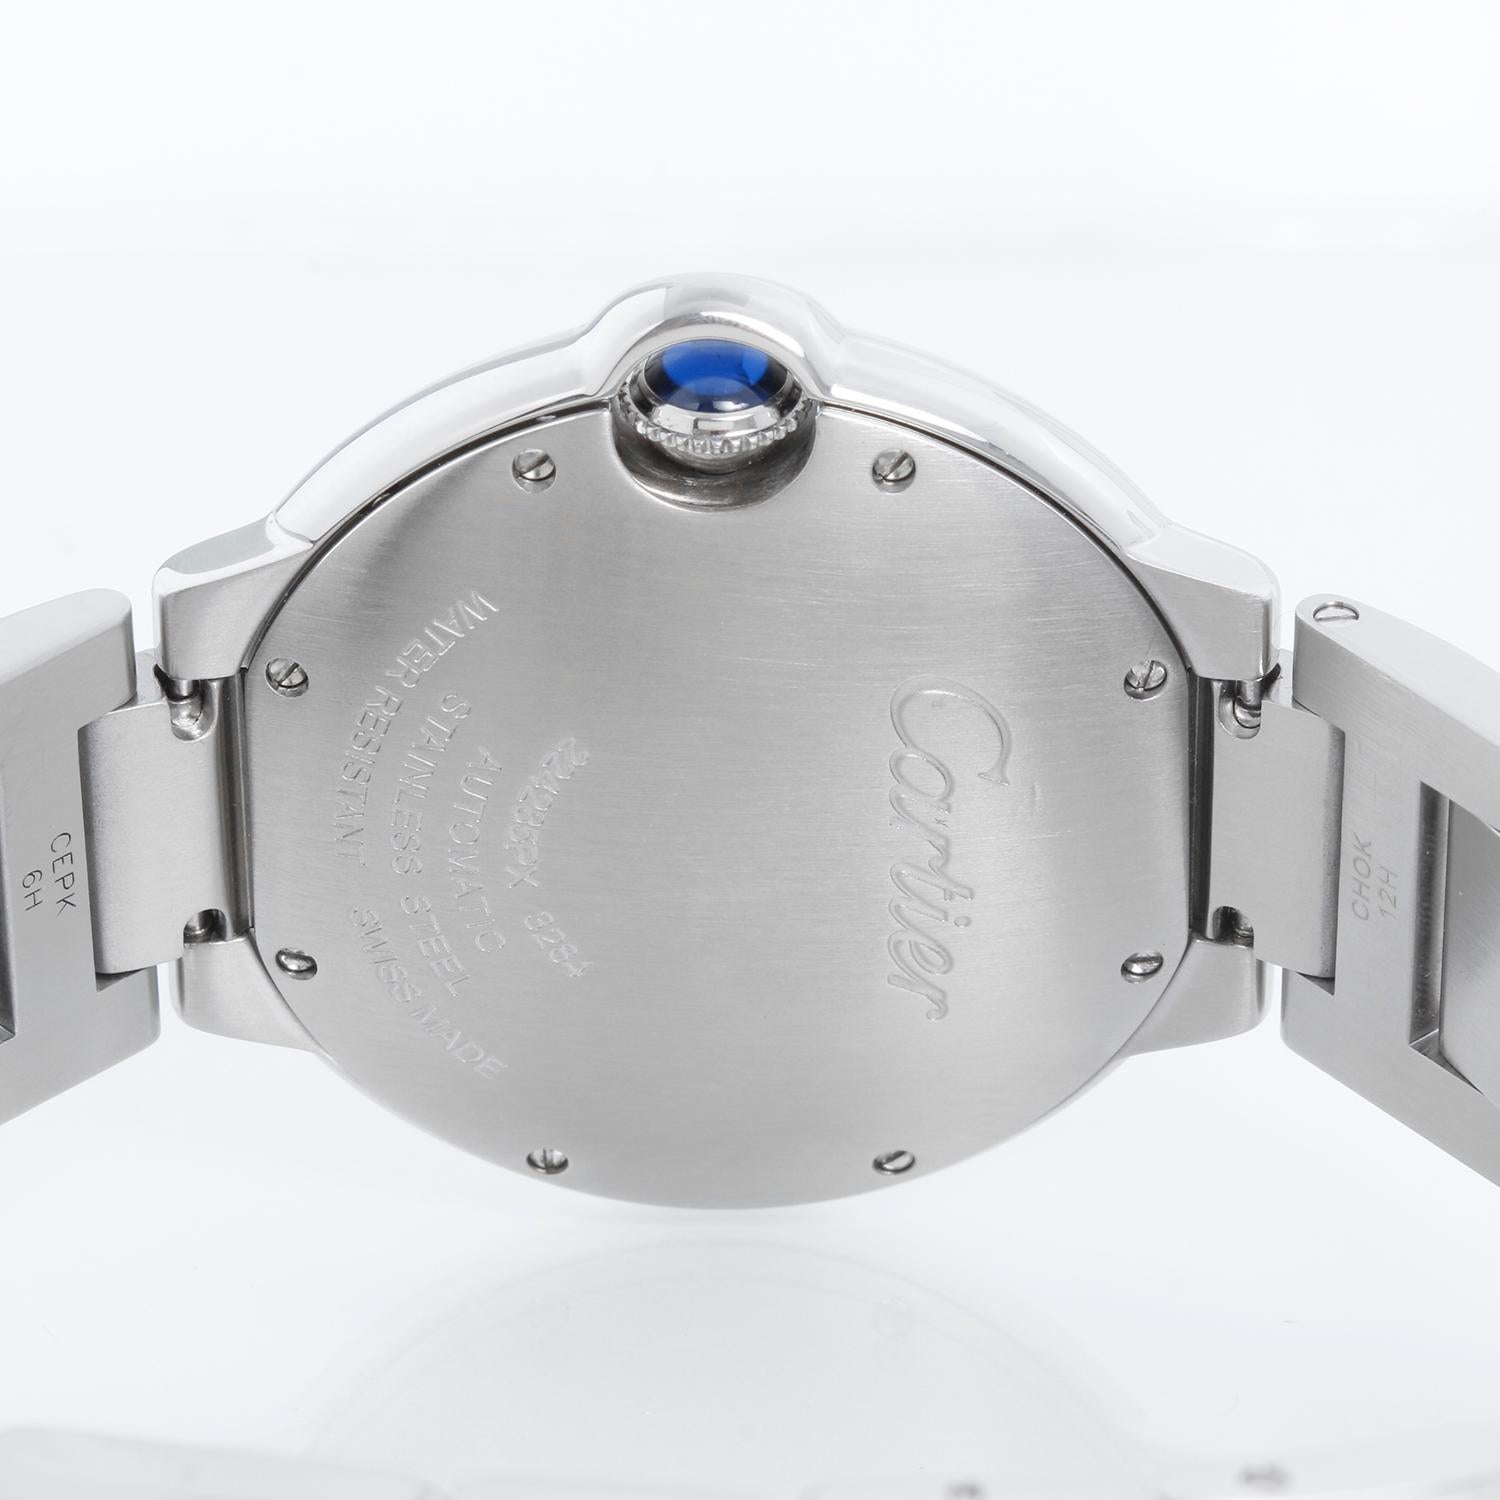 Cartier Ballon Bleu Midsize Stainless Steel Watch W6920046 3284 For Sale 2